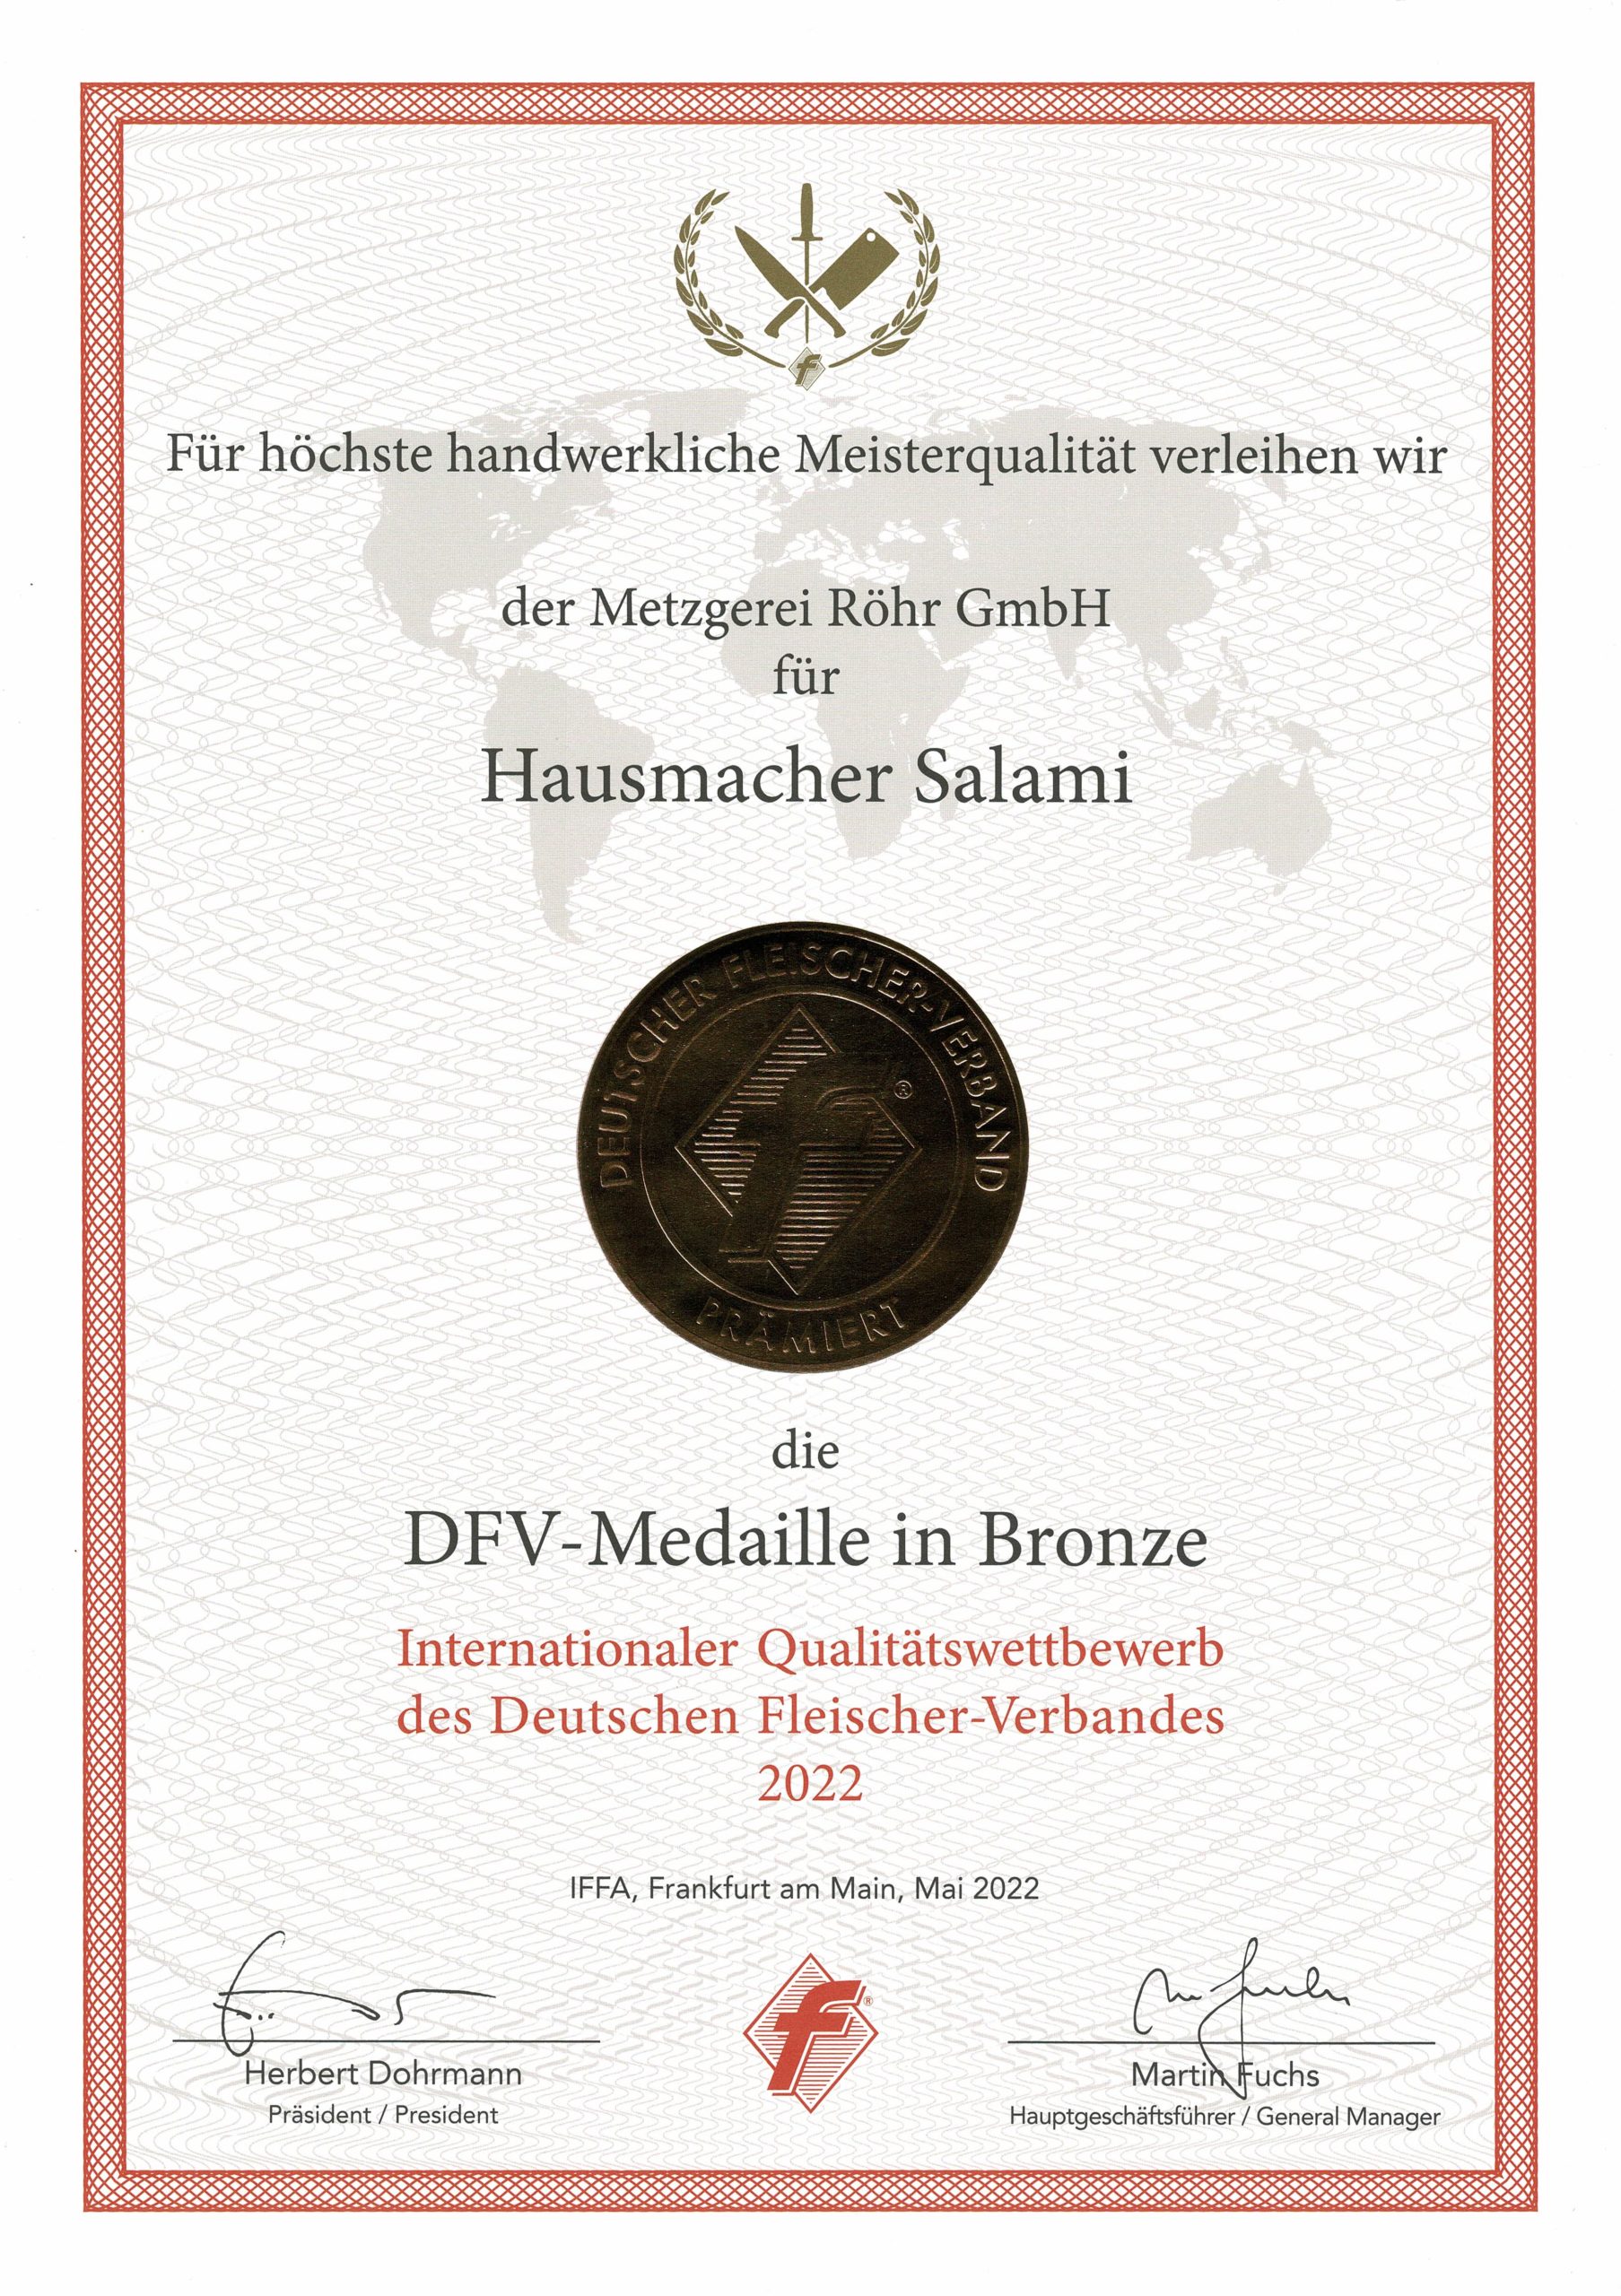 DFV-Medaille in Bronze für Hausmacher Salami